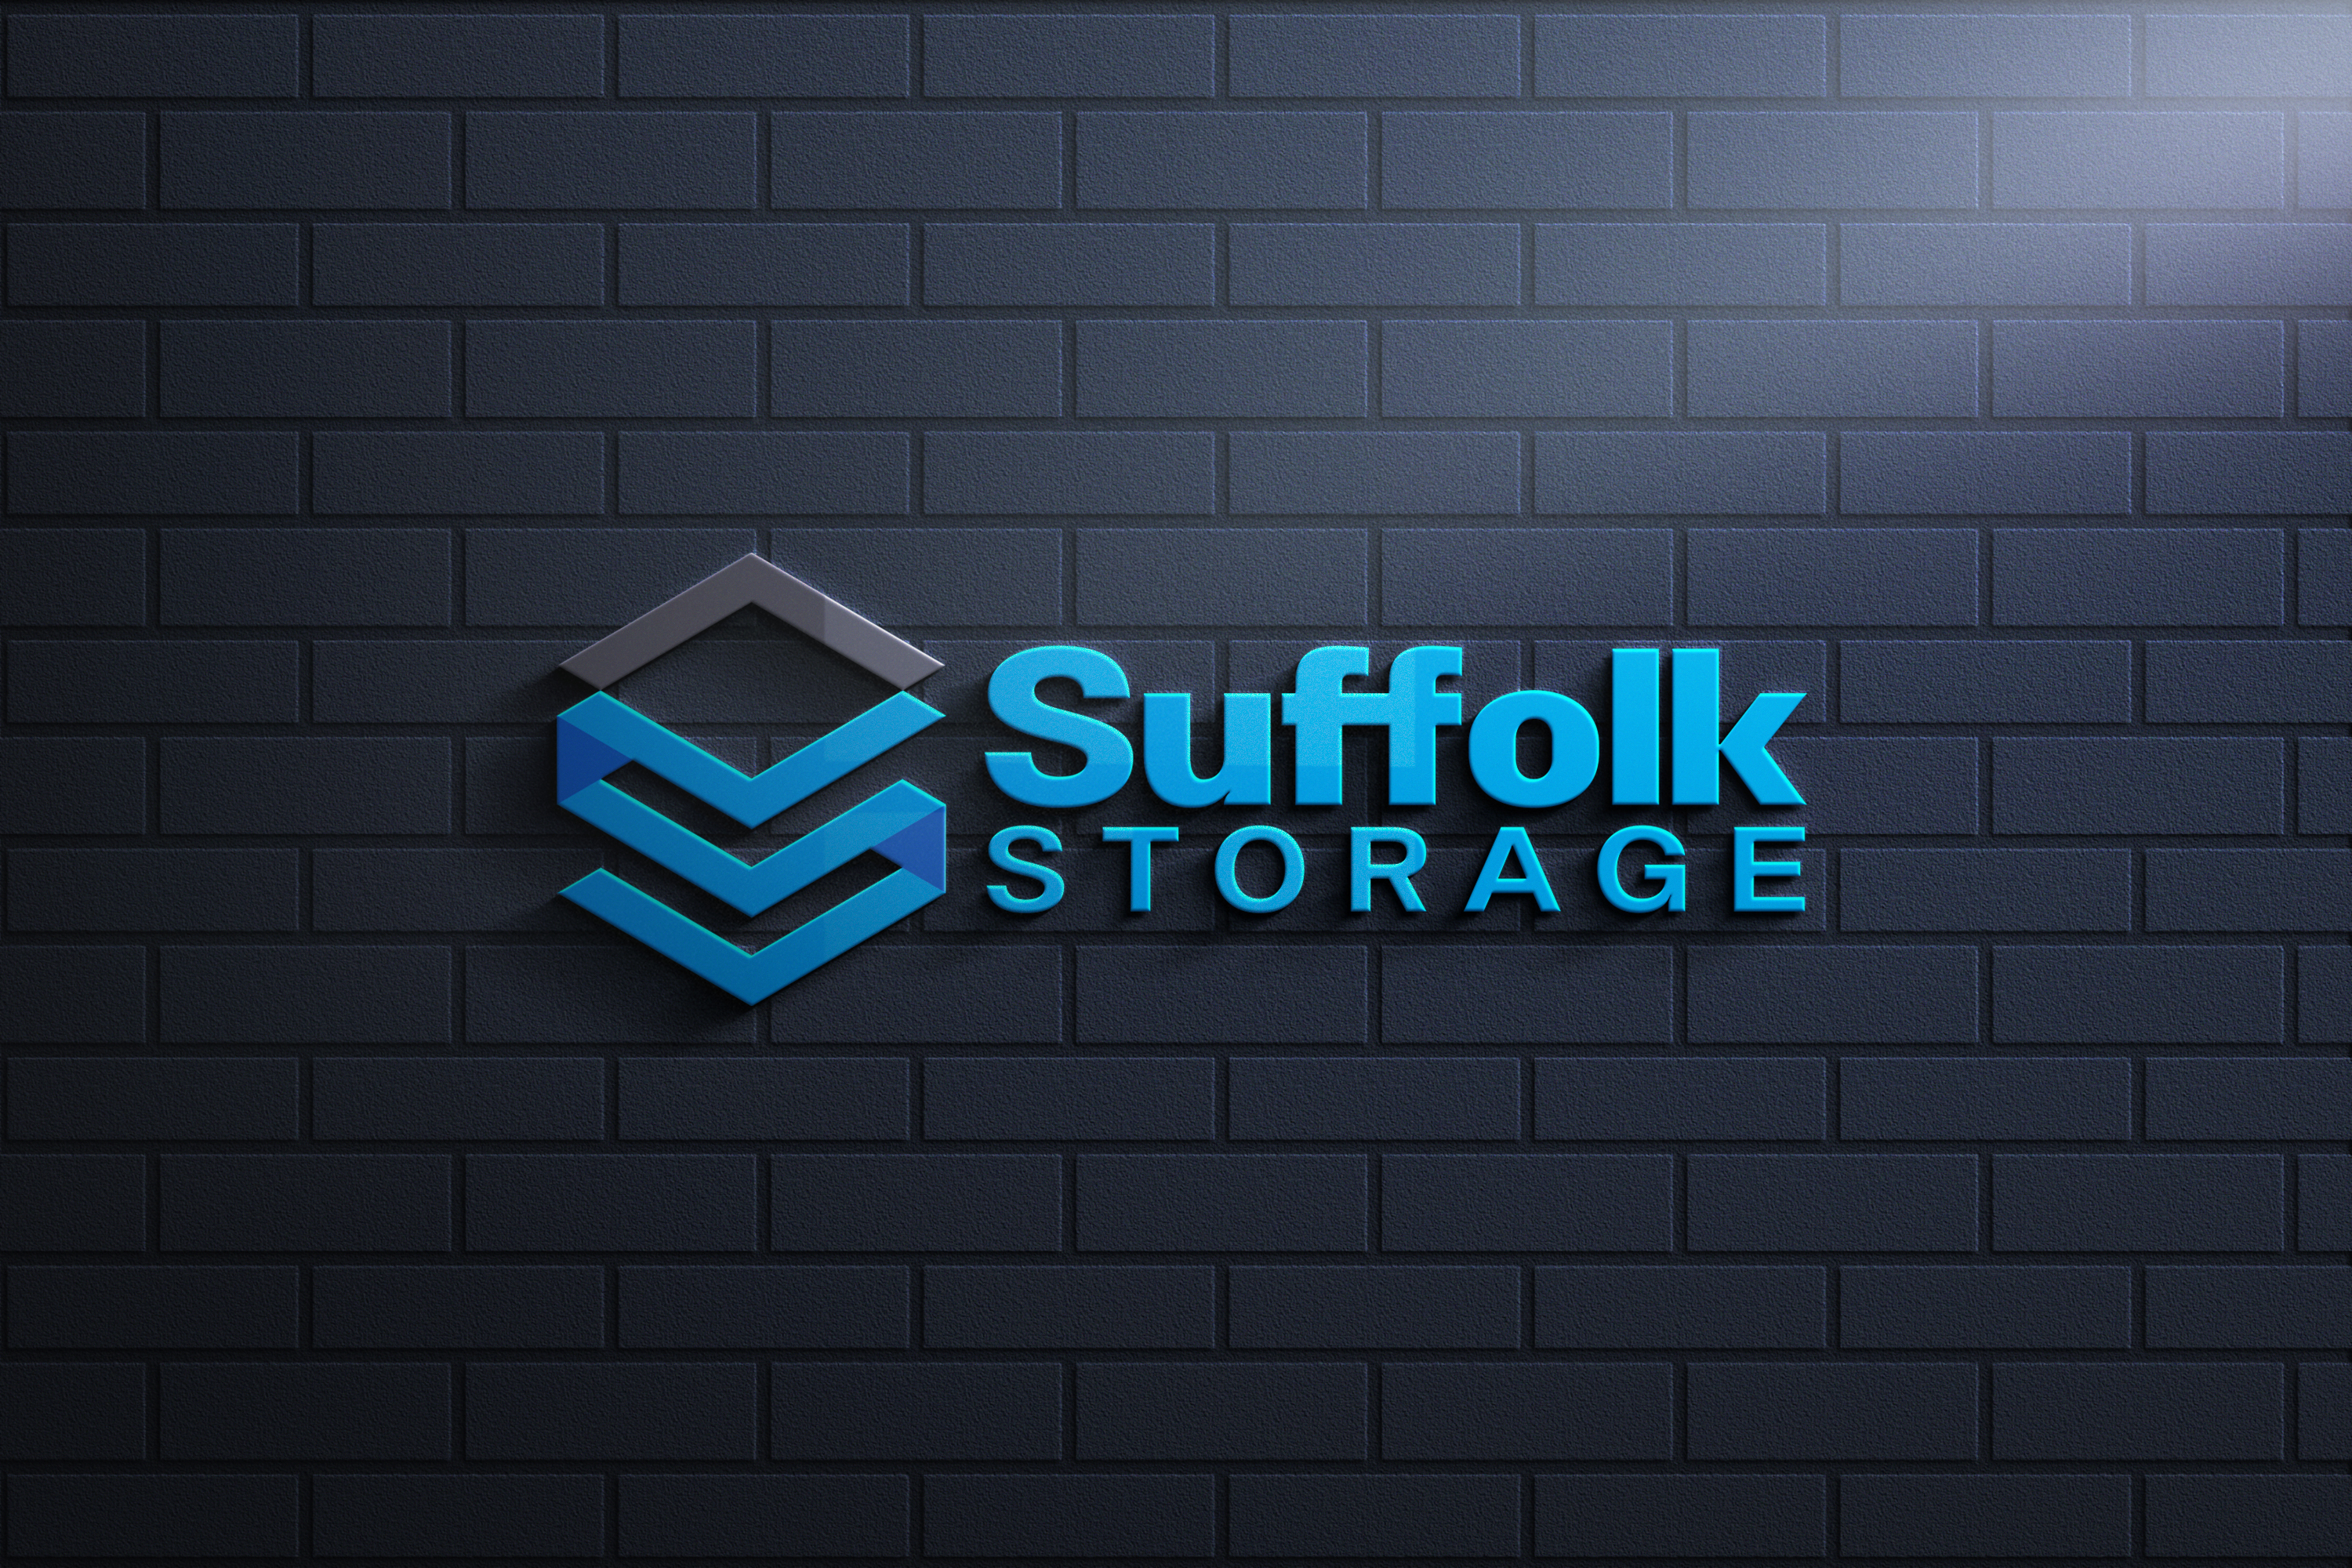 Suffolk storage logo 2